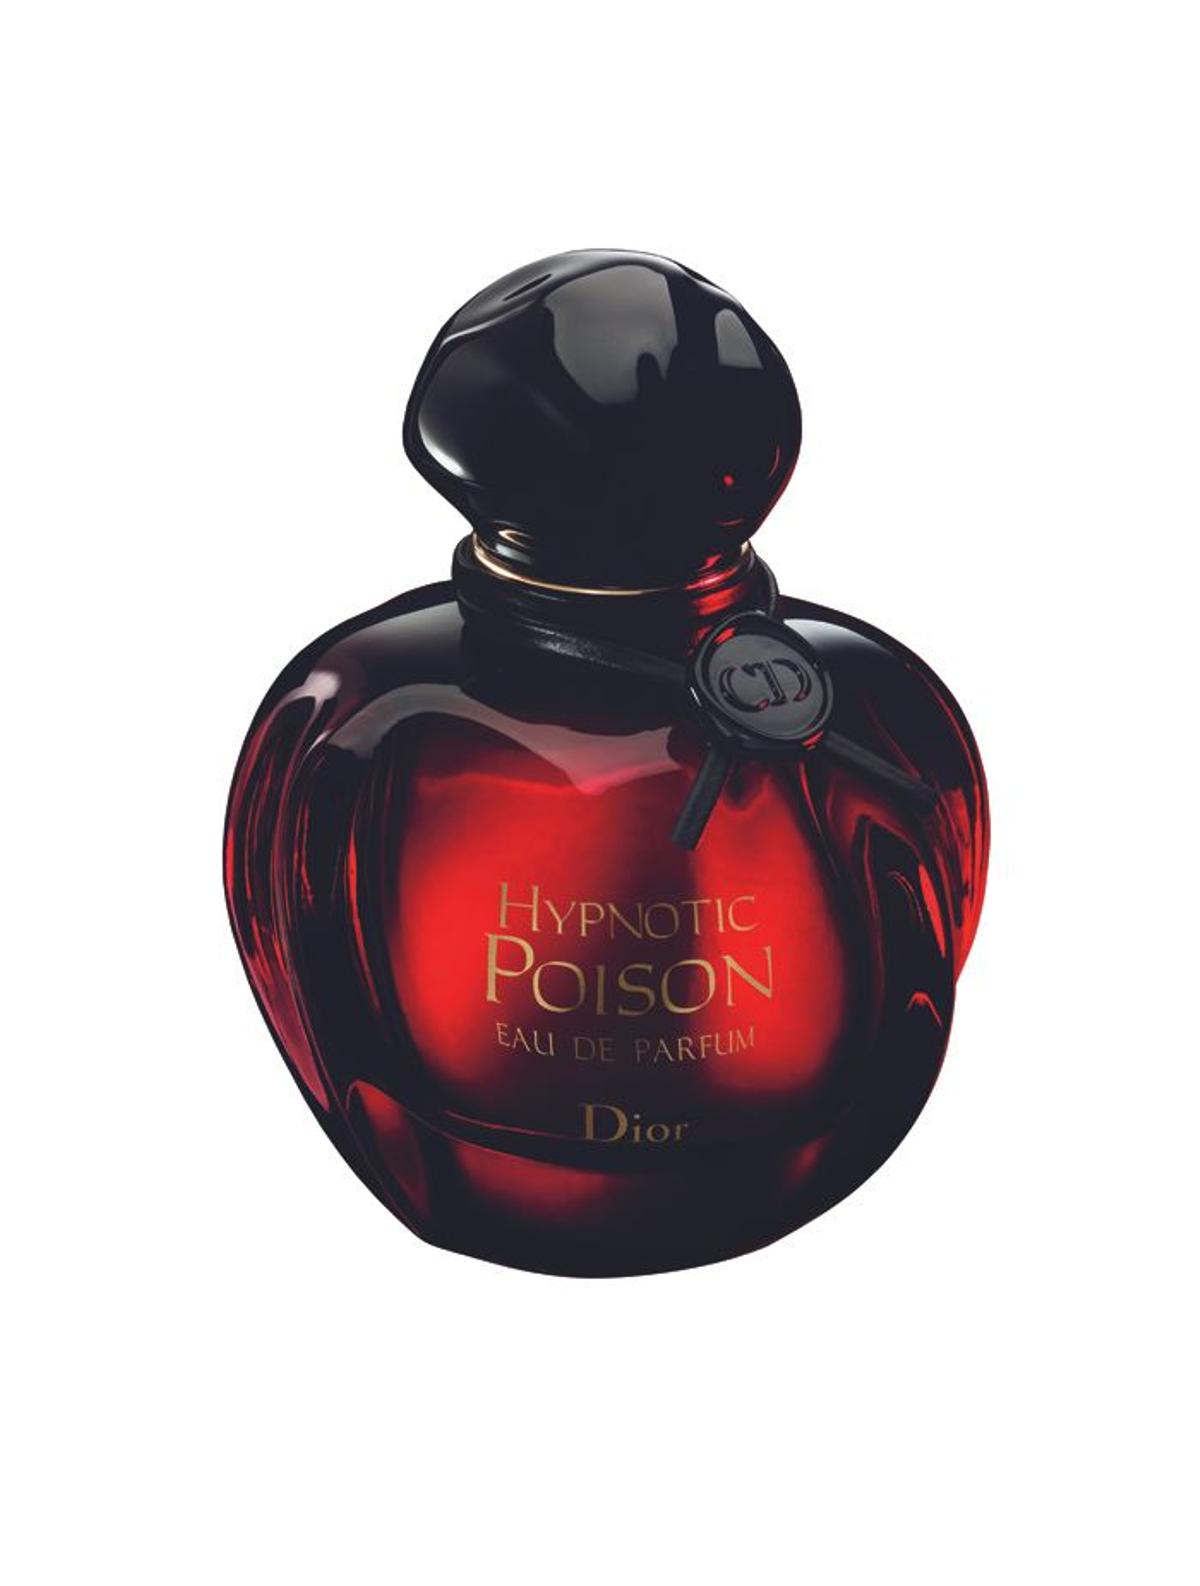 San Valentín 2015: Hypnotic Poison, Dior